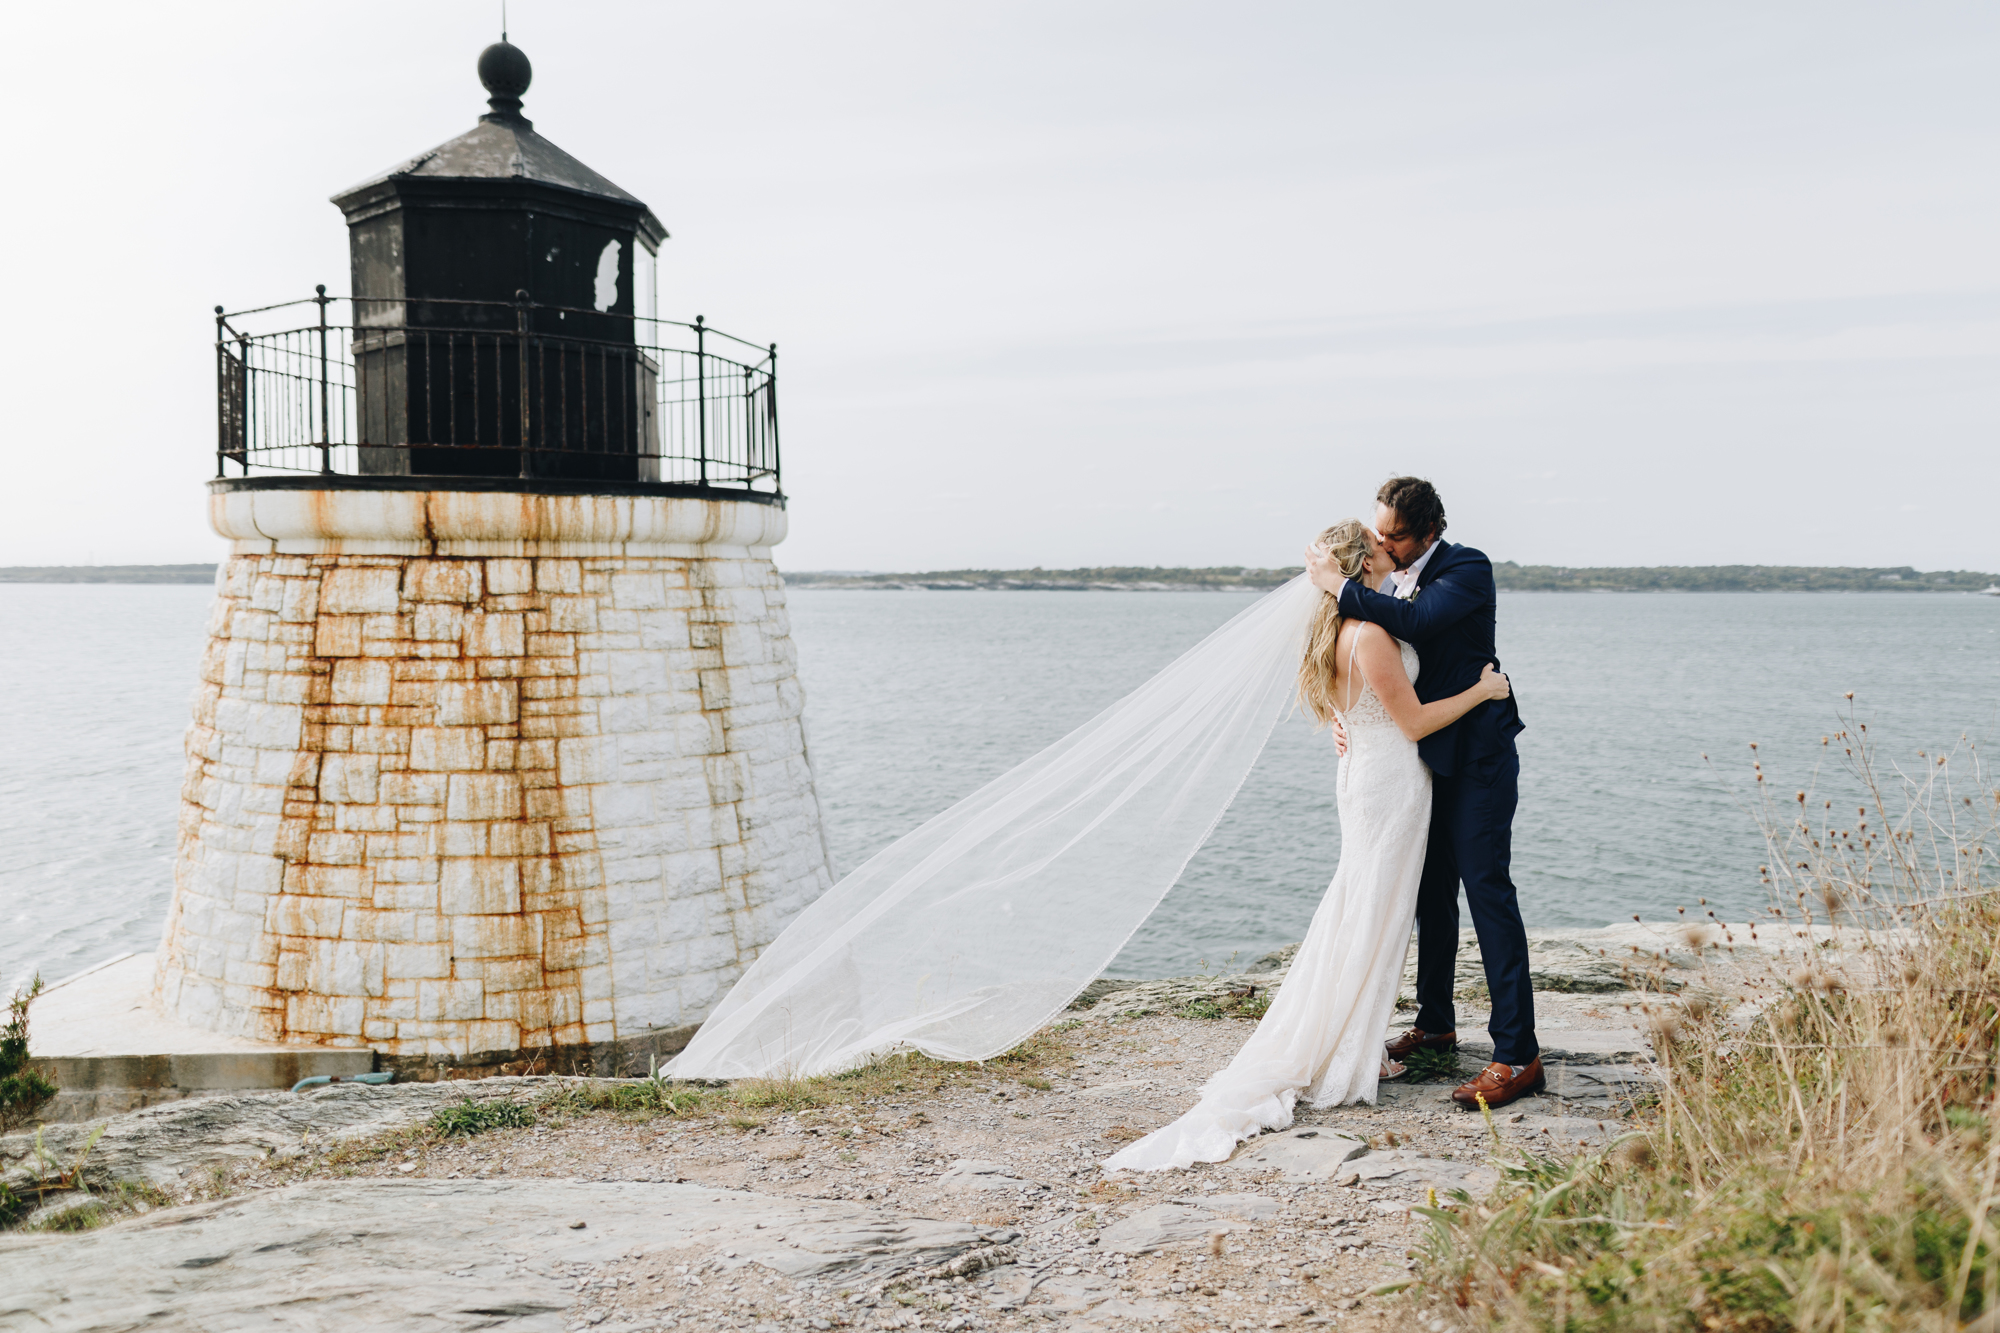 Wedding photos at the Castle Hill Inn Lighthouse